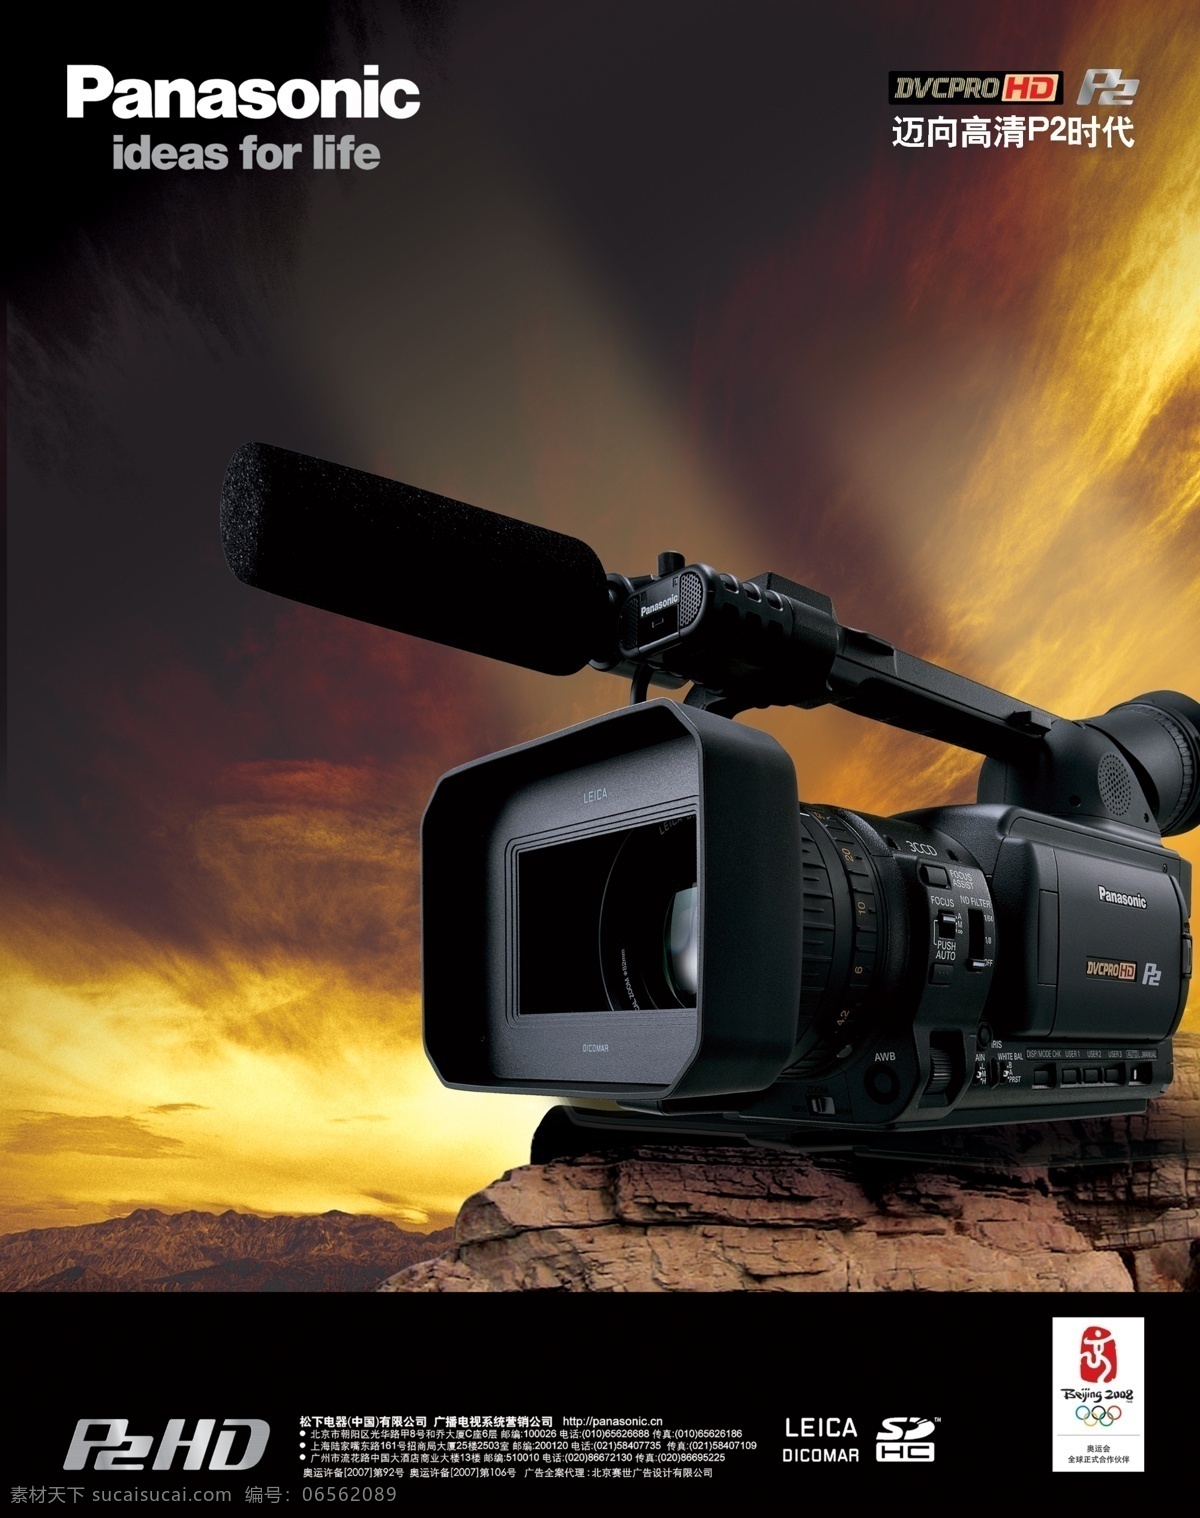 松下 高清 摄像机 广告 产品 p2时代 hd 高清摄像机 天空 夕阳 摄像机广告 创意广告 效果 分层 广告素材 图片模板 红色